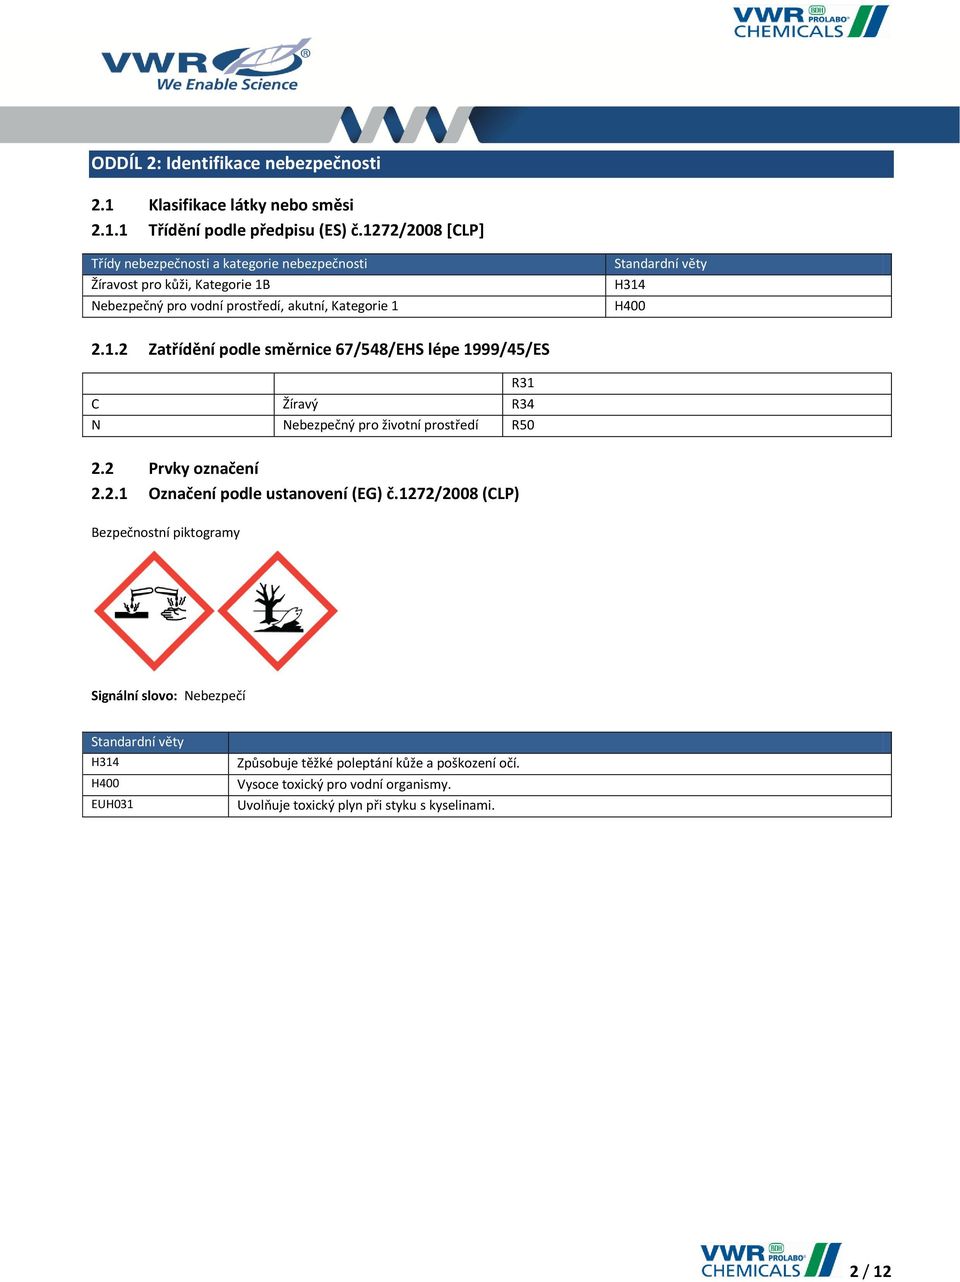 H400 2.1.2 Zatřídění podle směrnice 67/548/EHS lépe 1999/45/ES R31 C Žíravý R34 N Nebezpečný pro životní prostředí R50 2.2 Prvky označení 2.2.1 Označení podle ustanovení (EG) č.